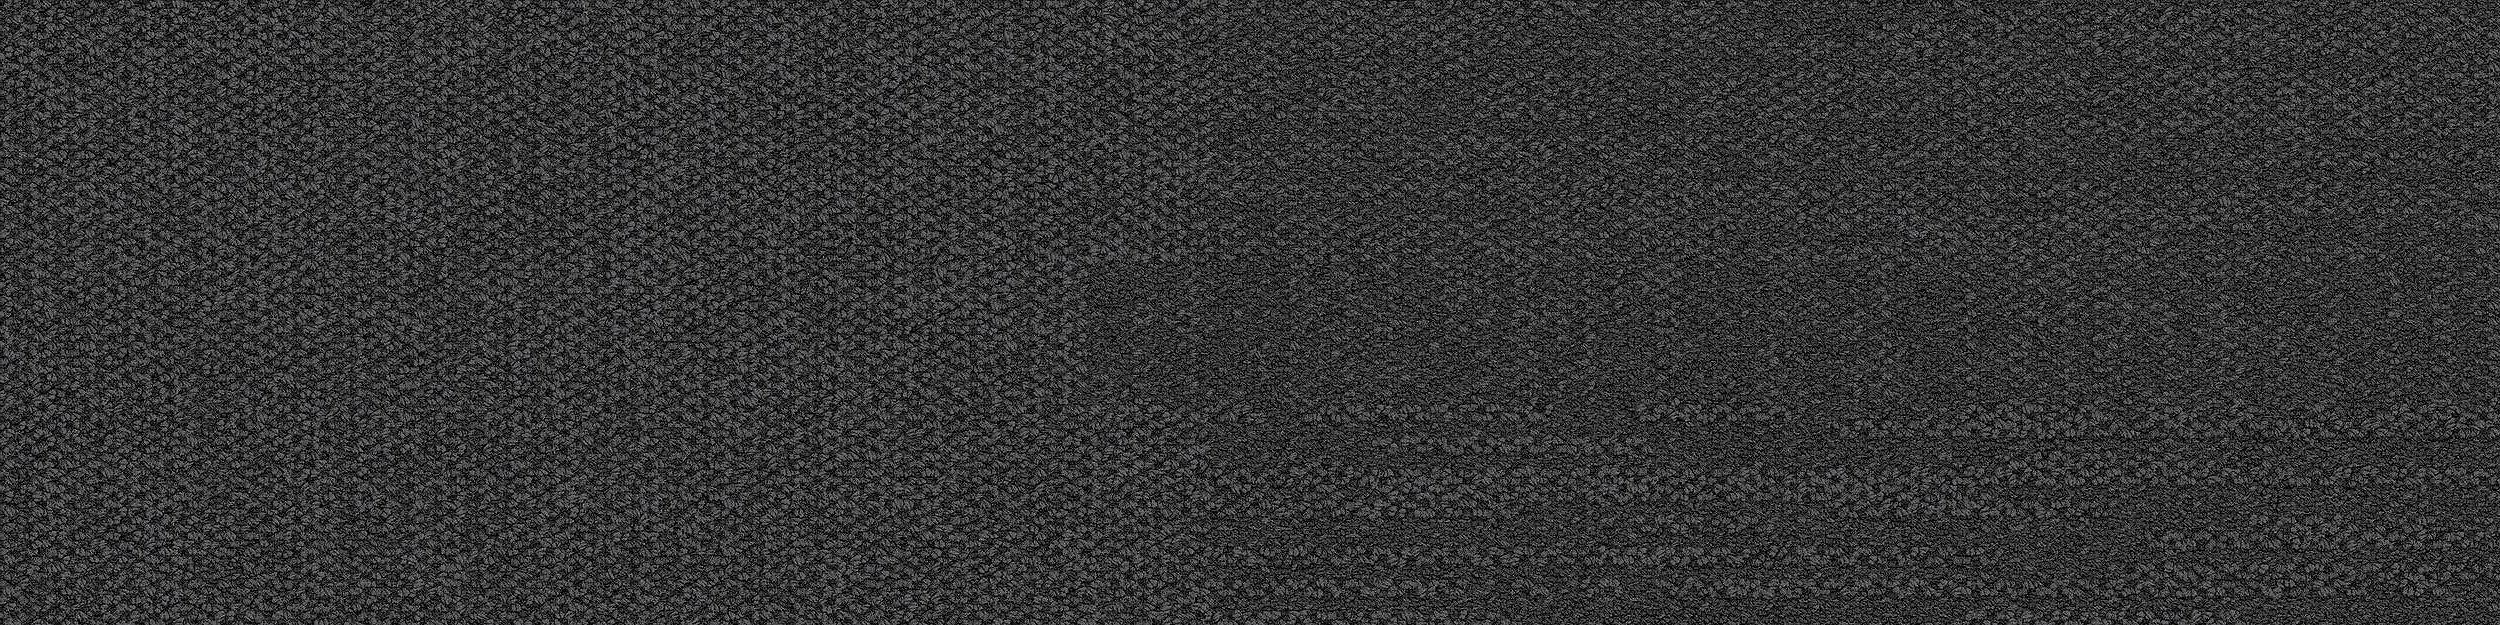 Verticals Carpet Tile In Zenith imagen número 12